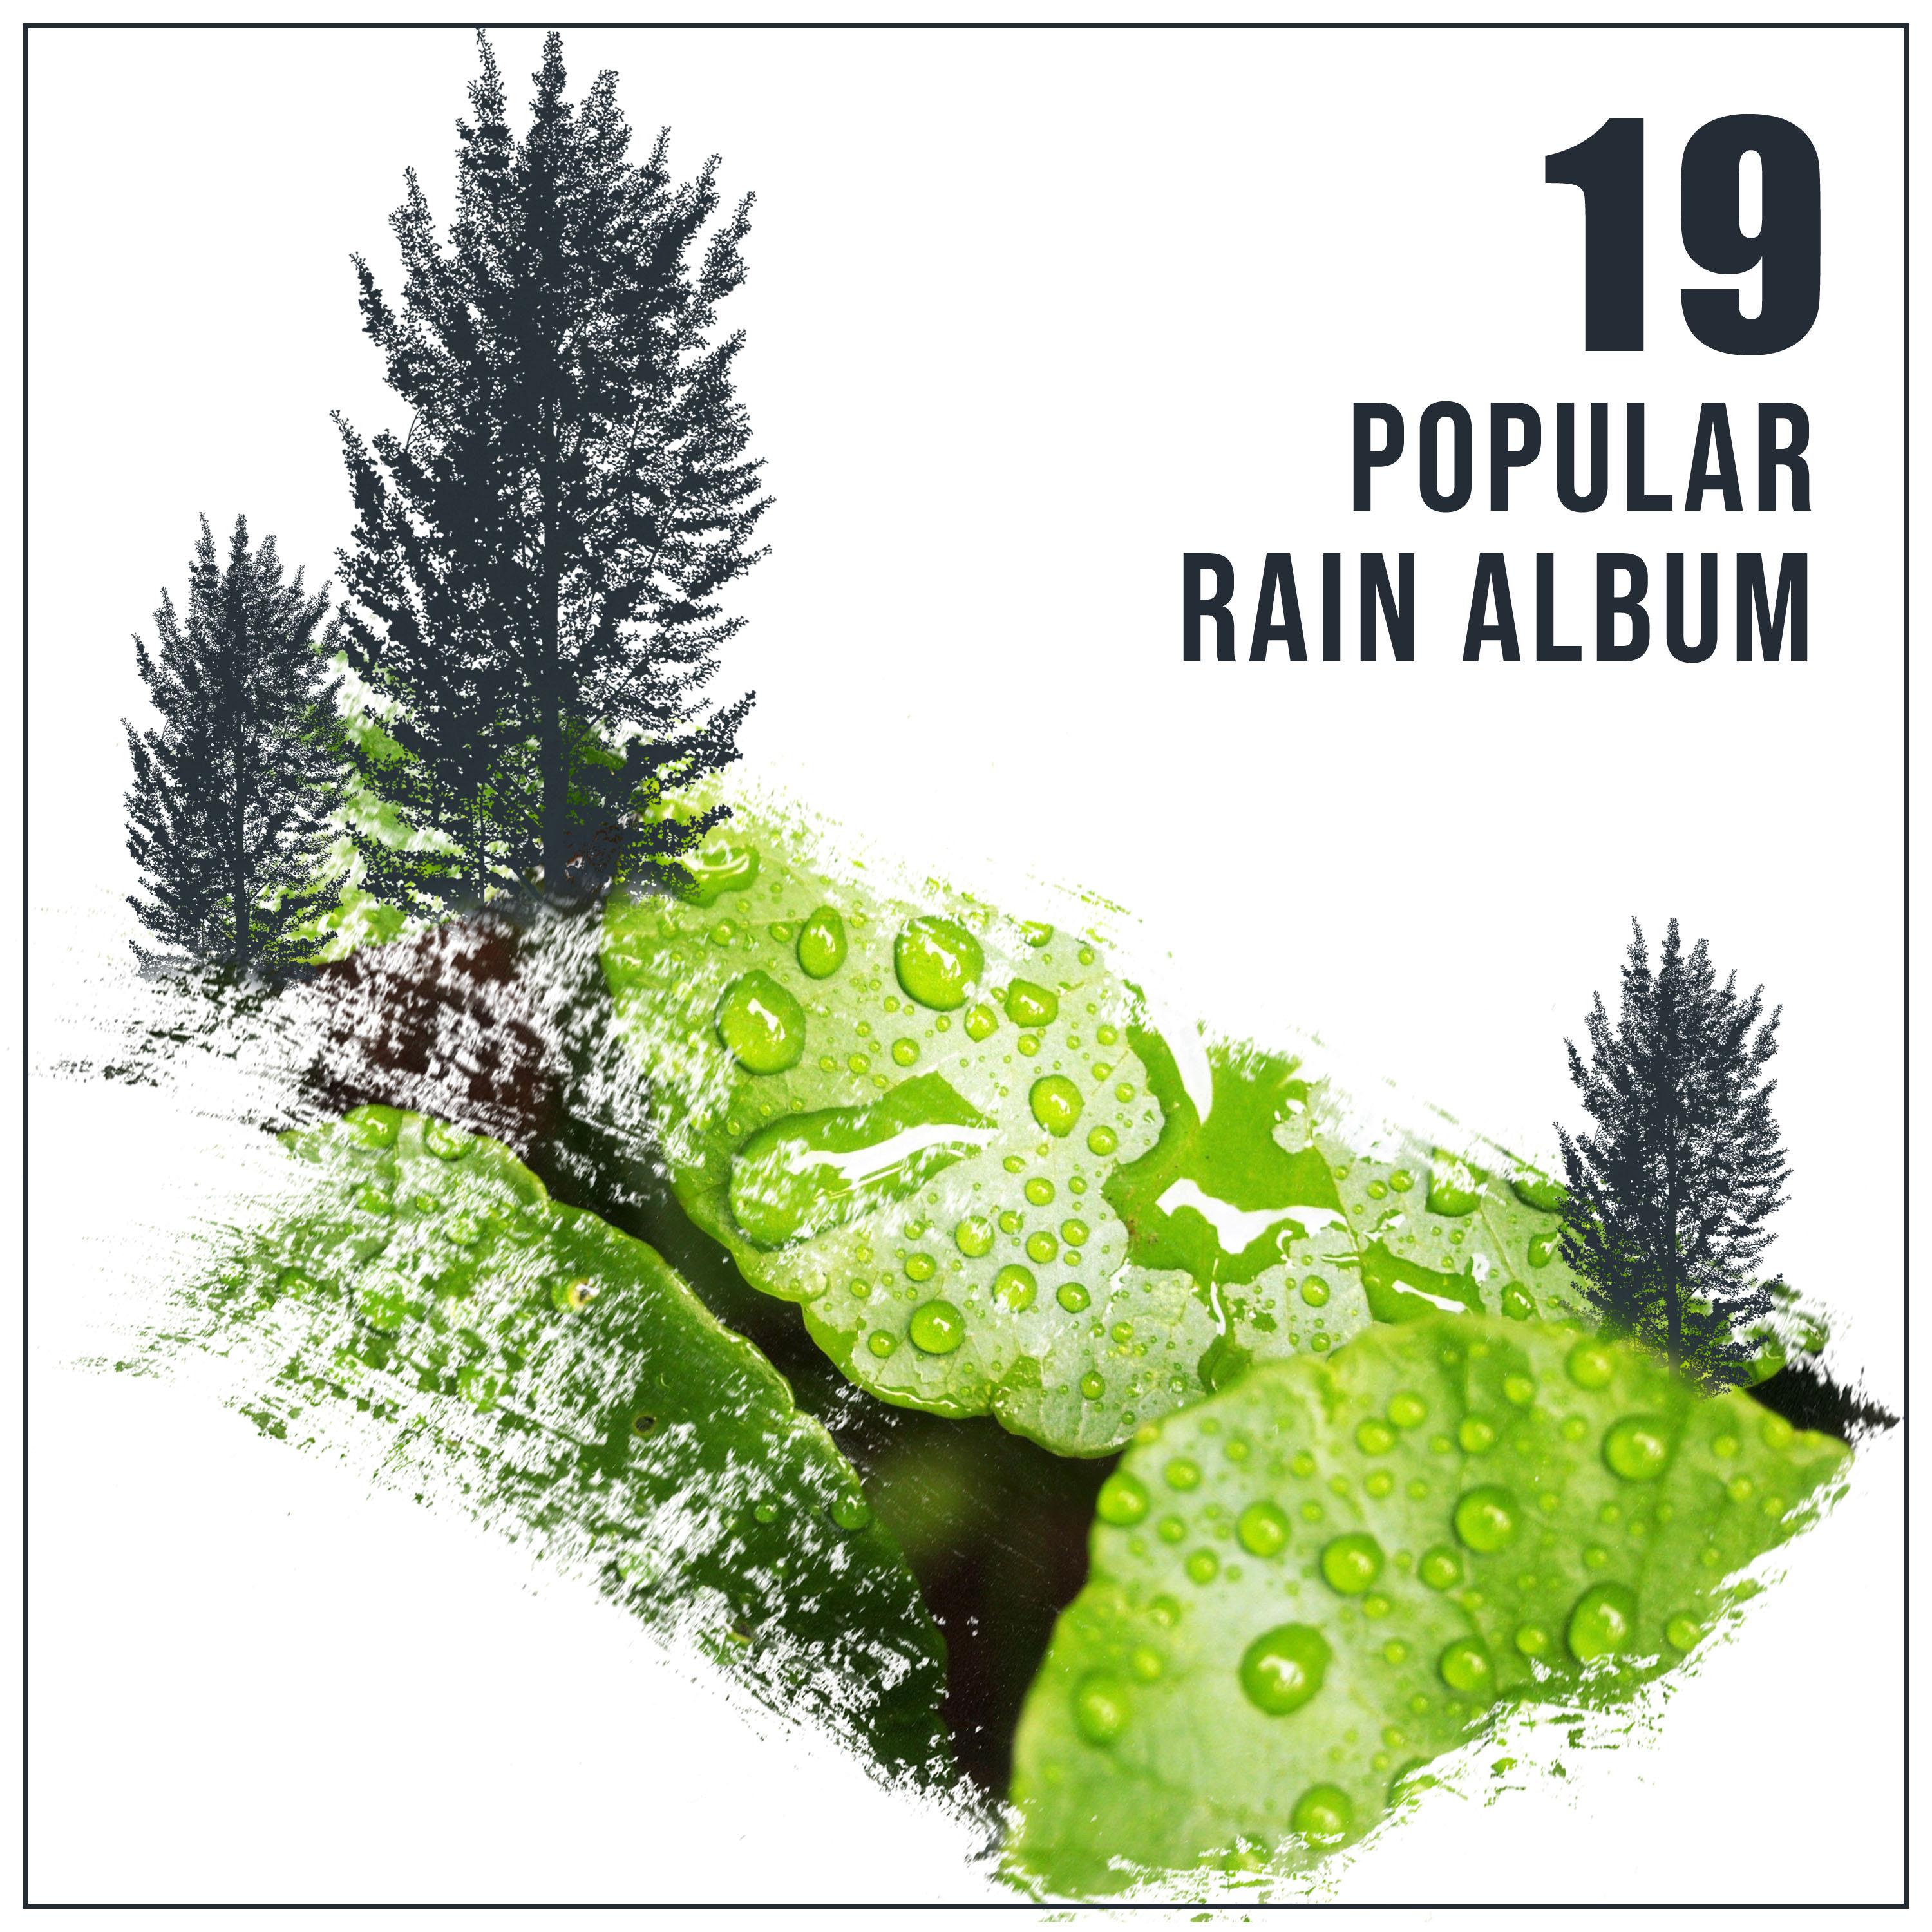 19 Popular Rain Album for Spa